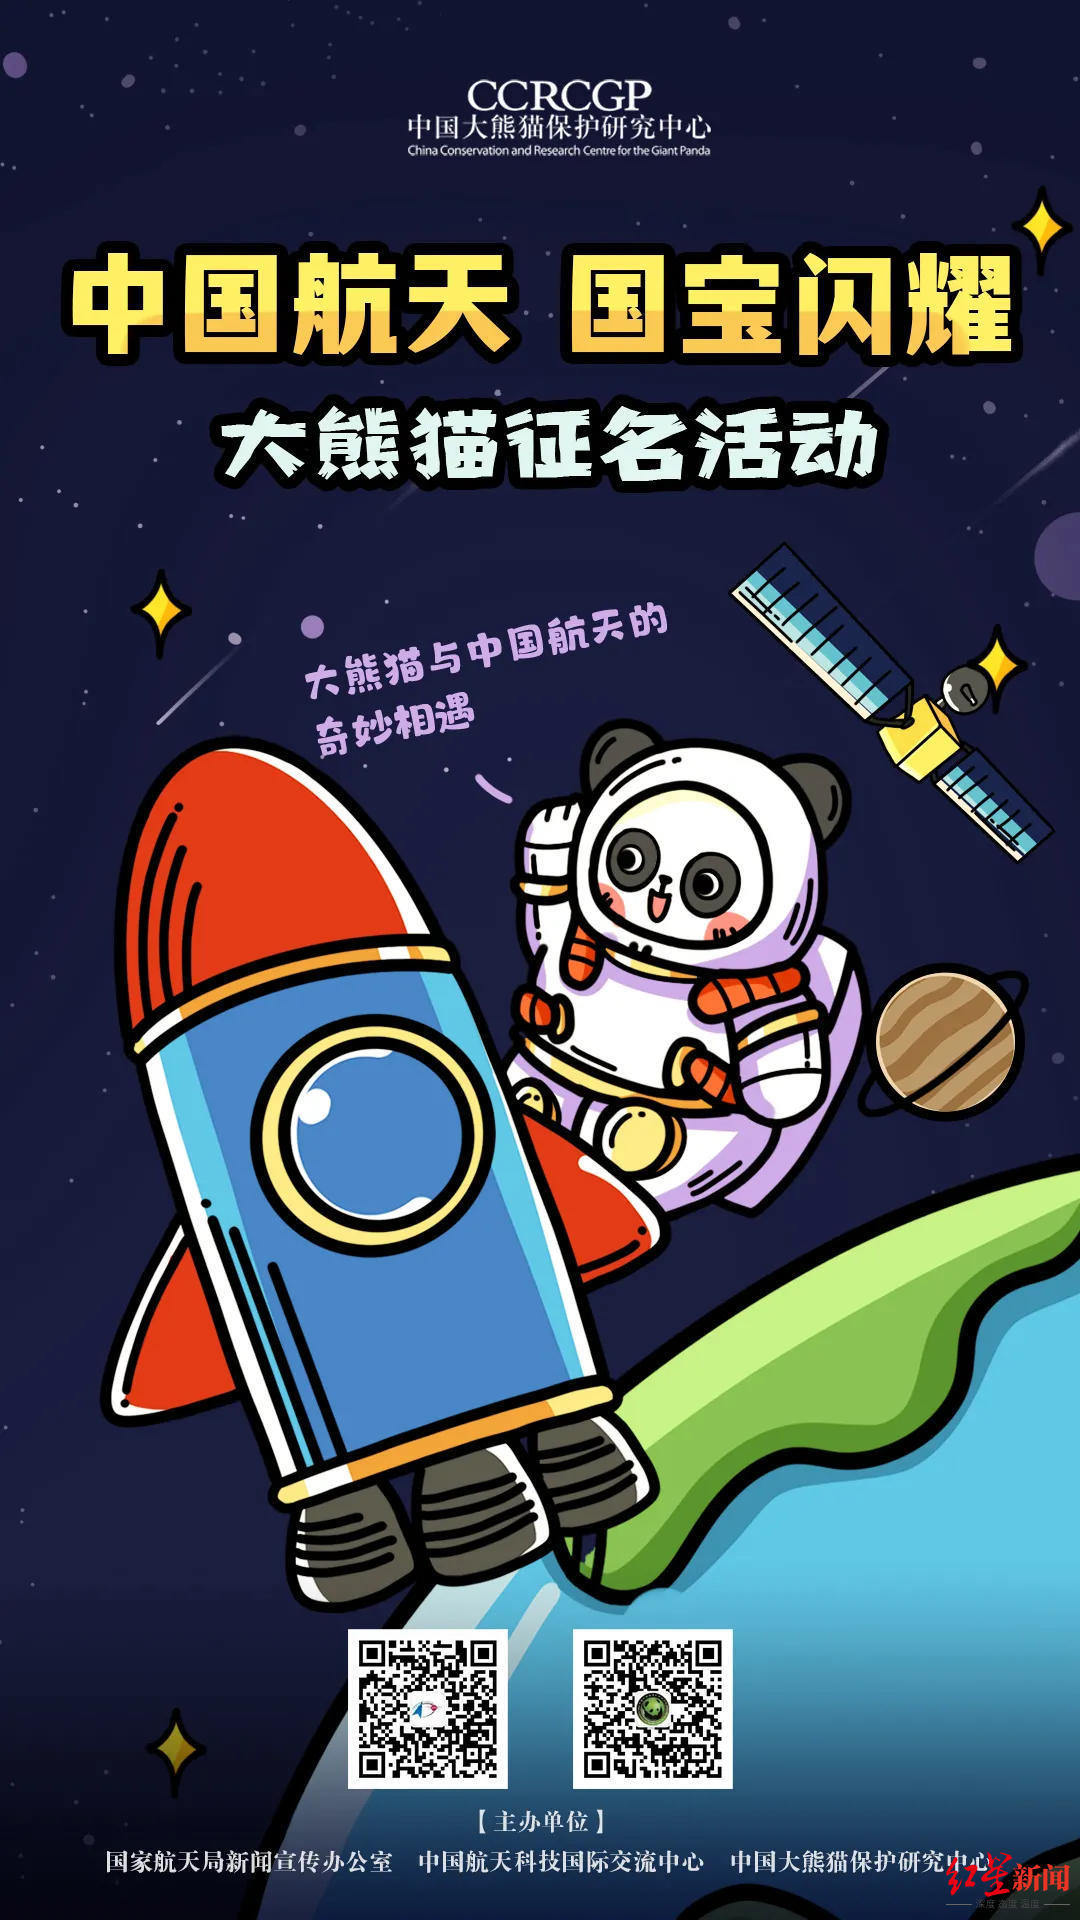 快来给“航天熊猫宝宝”取名，熊猫中心免费年票一张、火箭发射观礼名额等你拿